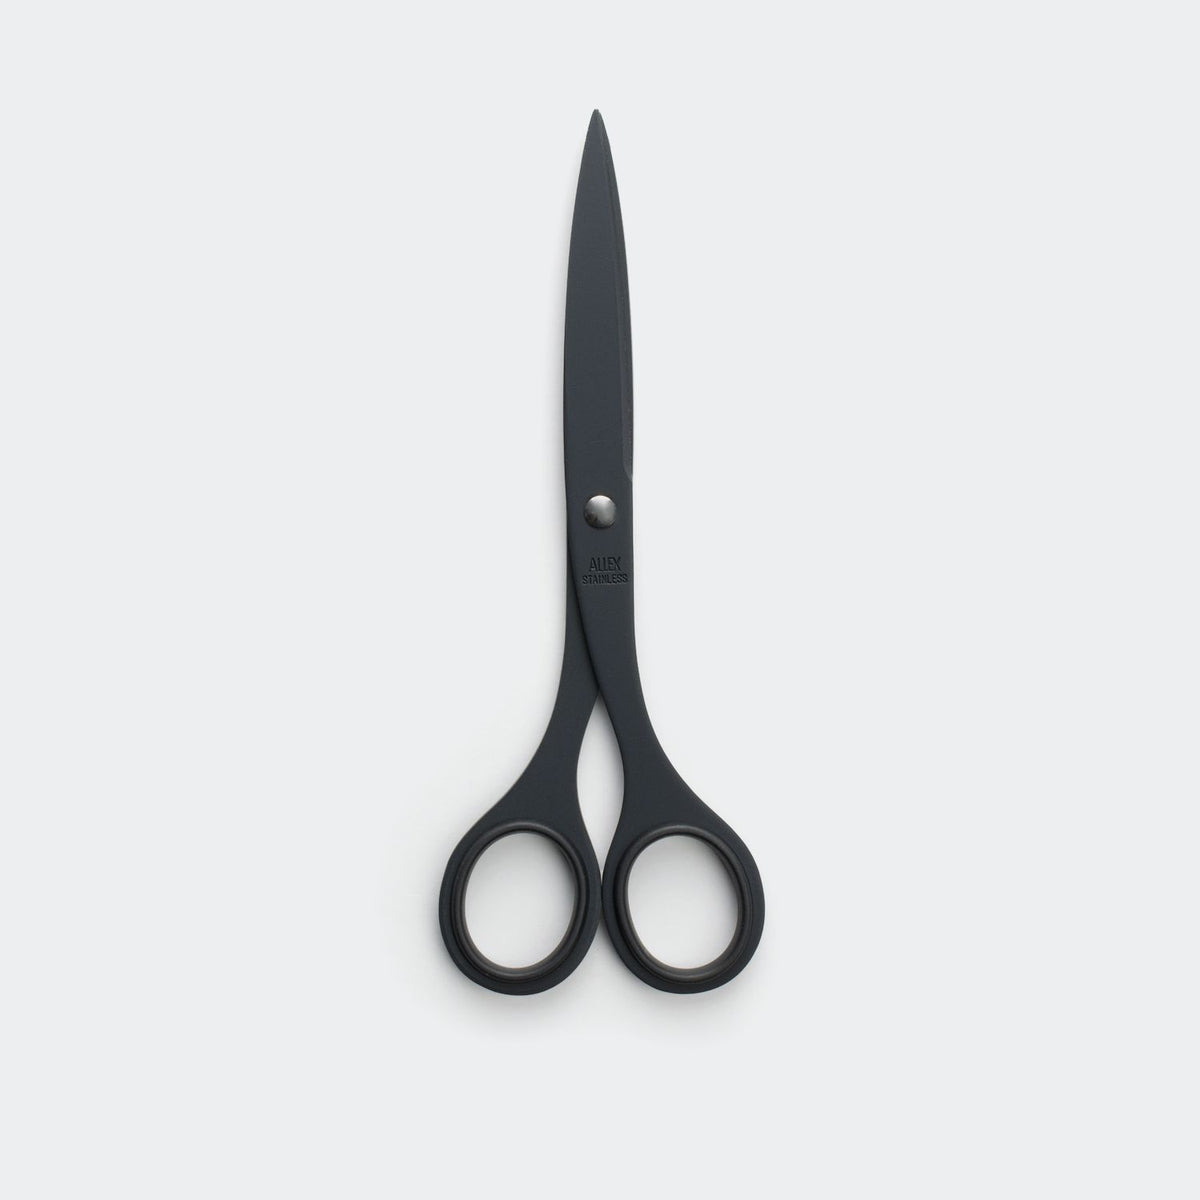 https://www.shopkanso.com/cdn/shop/products/allex-scissors-kanso-905858.jpg?crop=center&height=1200&v=1686239006&width=1200